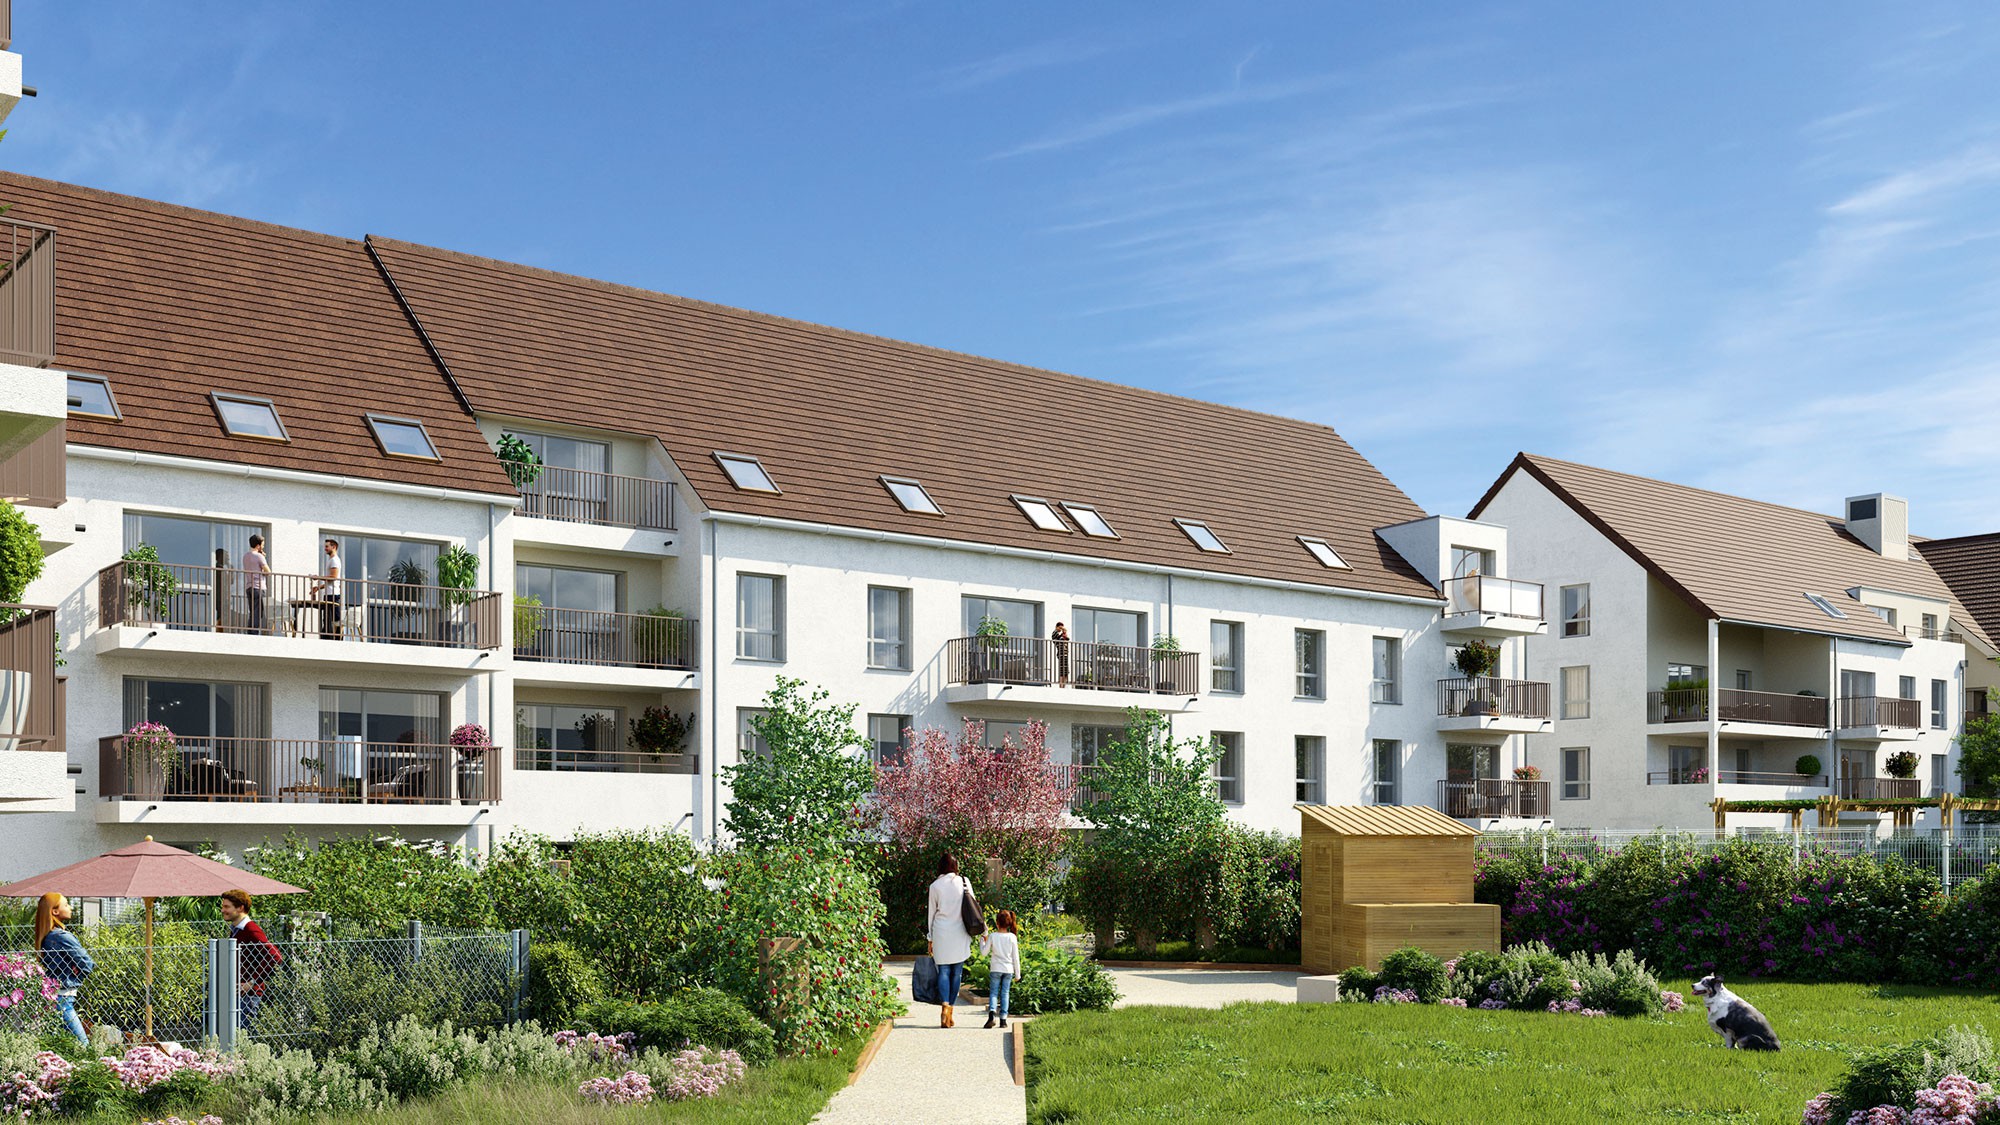 🏠Découvrez la résidence Mobicap de Dijon (ouverture 2026)